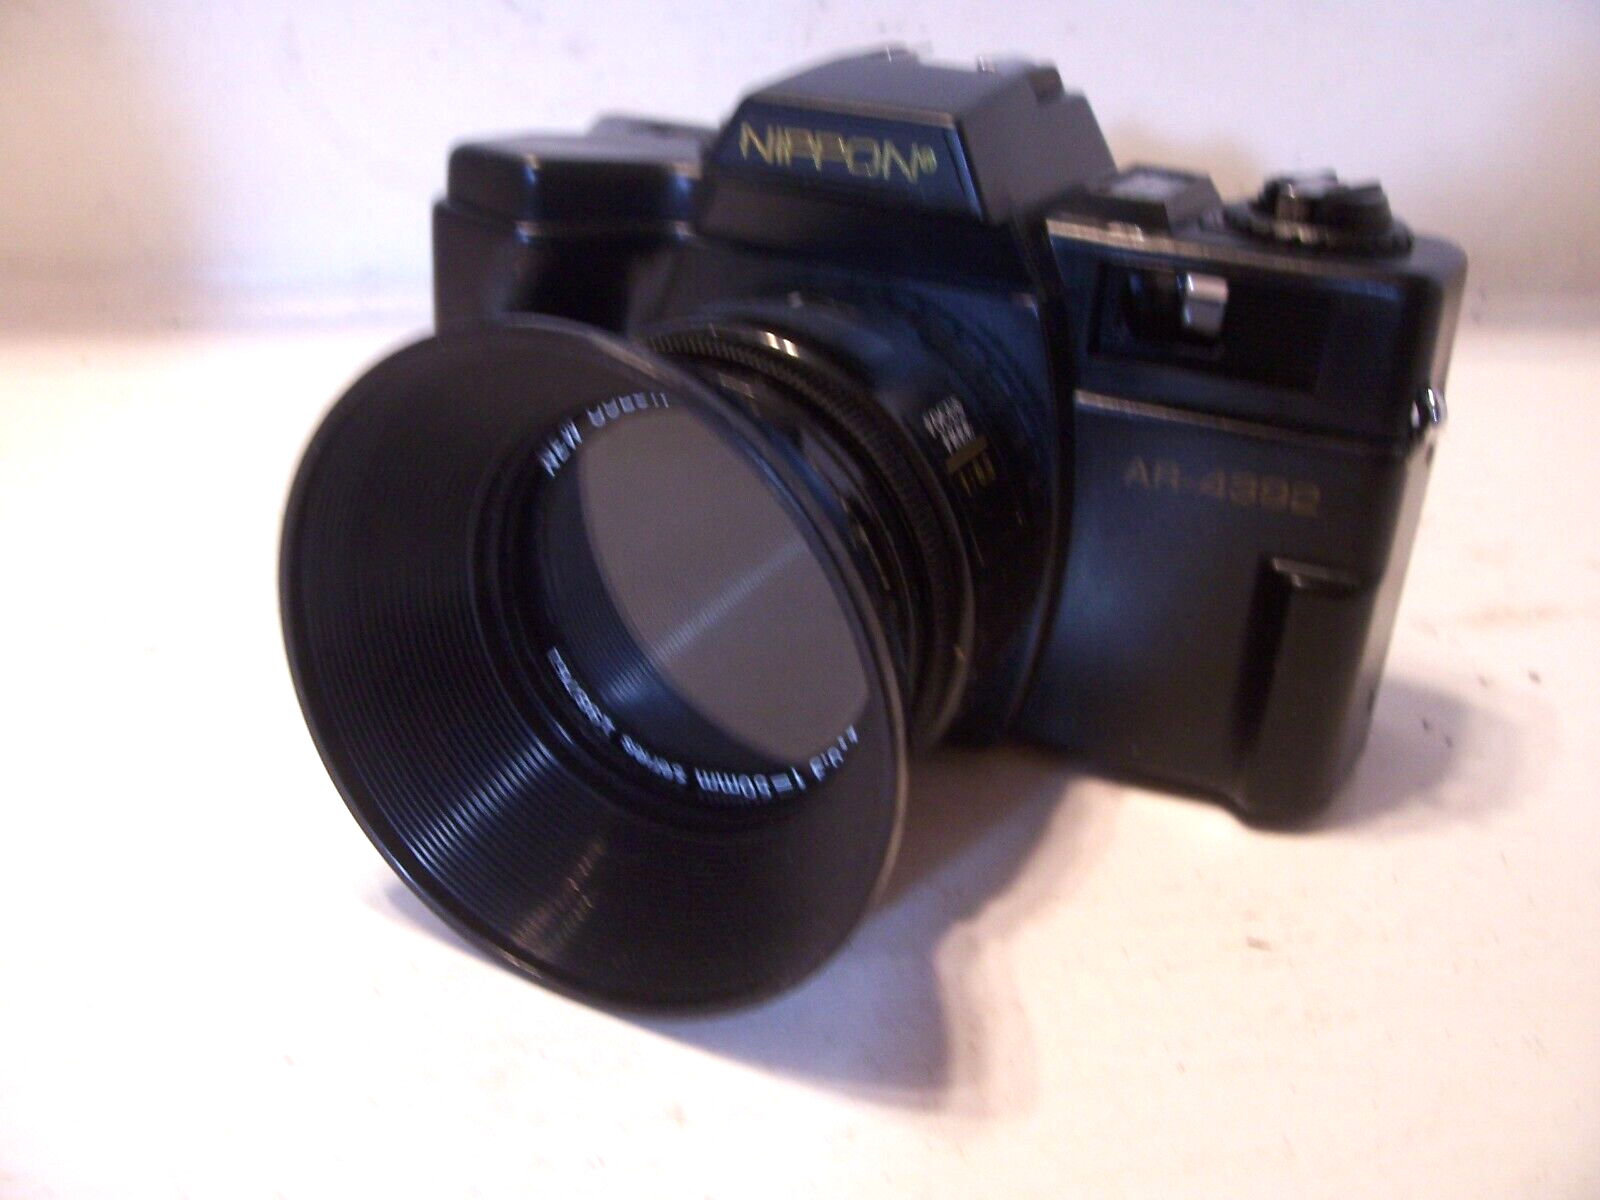 NEW Vintage Film 35mm Camera Nippon AR-4392F w/ Case, Strap, Sun Shade, Lens Cap Nippon ar 4392F - фотография #14